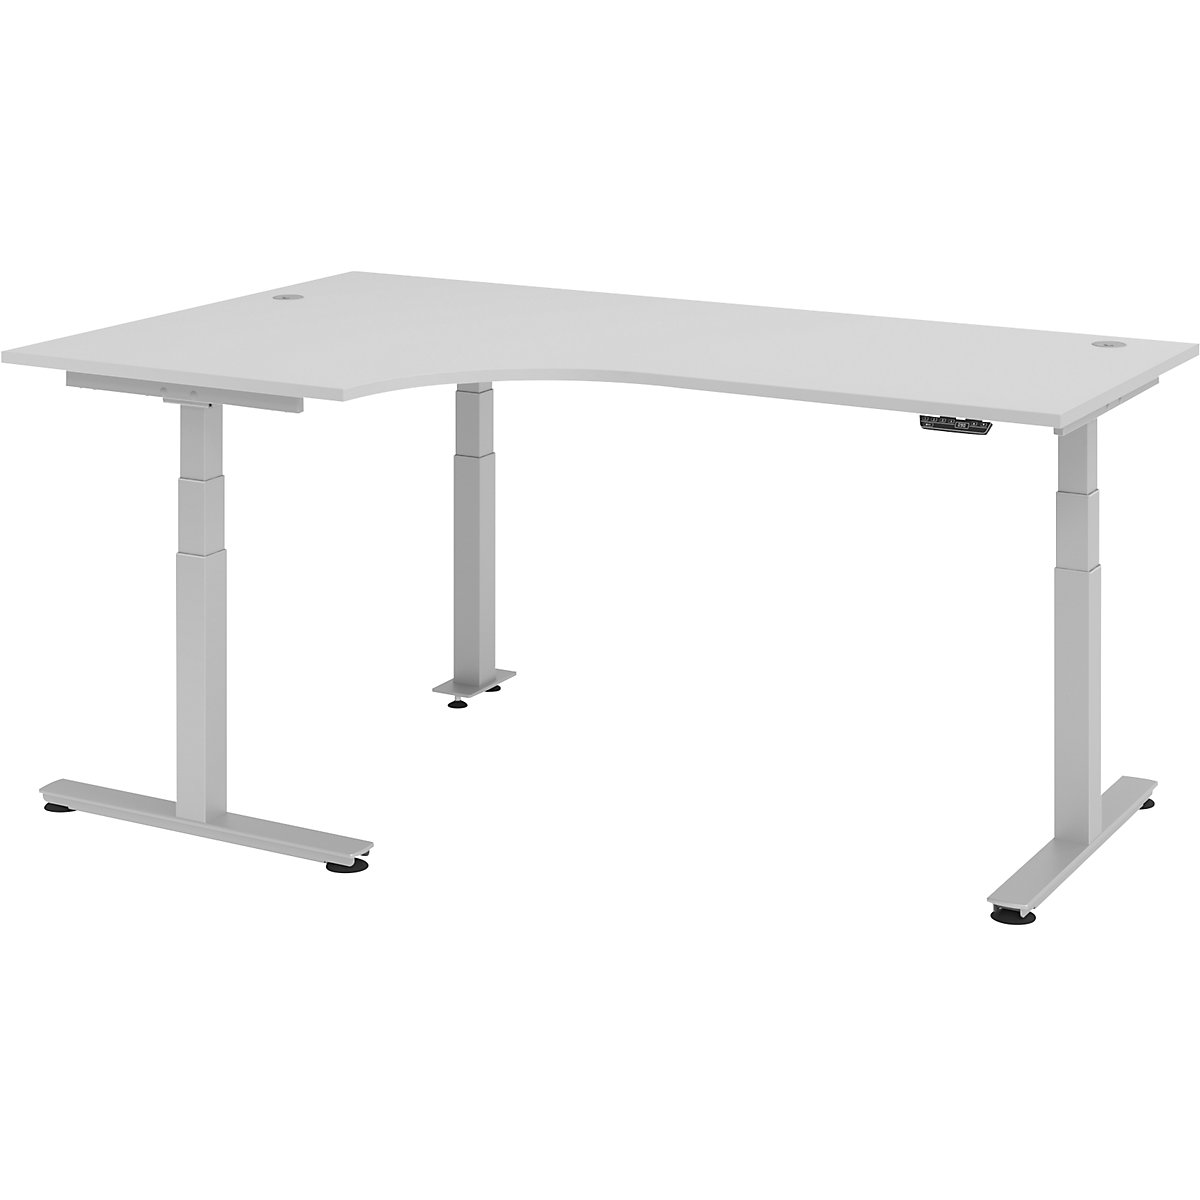 Sta-bureautafel, elektrisch in hoogte verstelbaar UPLINER-2.0, hoekvorm, breedte 2000 mm, lichtgrijs-12